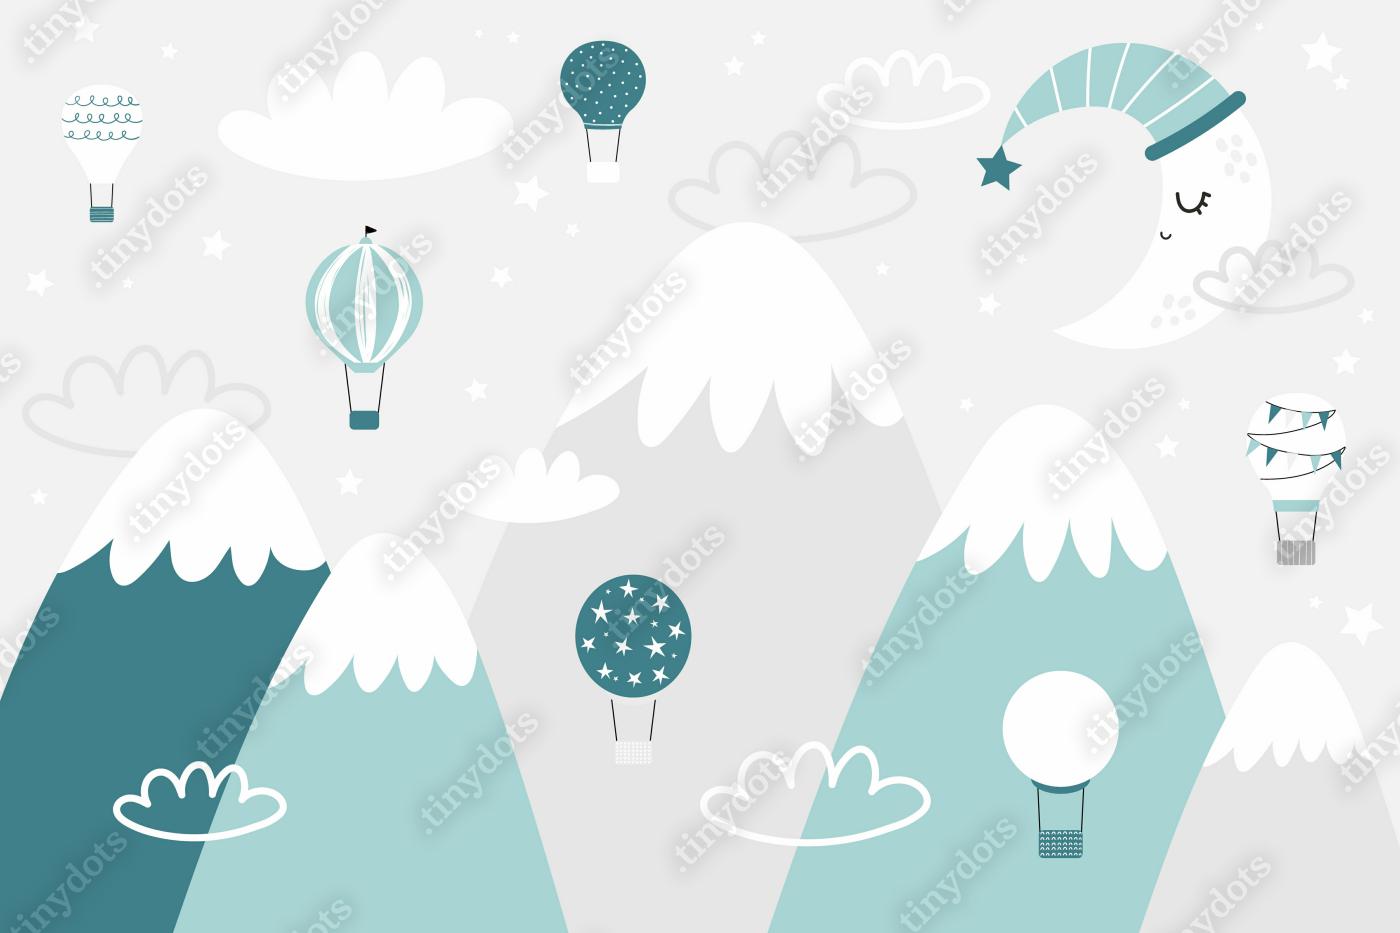 Fototapeta Wektor dzieci ręcznie rysowane doodle góry ilustracji w stylu skandynawskim. Krajobraz górski, chmury, balony powietrzne i cute księżyca. Fototapeta dla dzieci. Krajobraz górski, projekt pokoju dziecka, wystrój ścian.